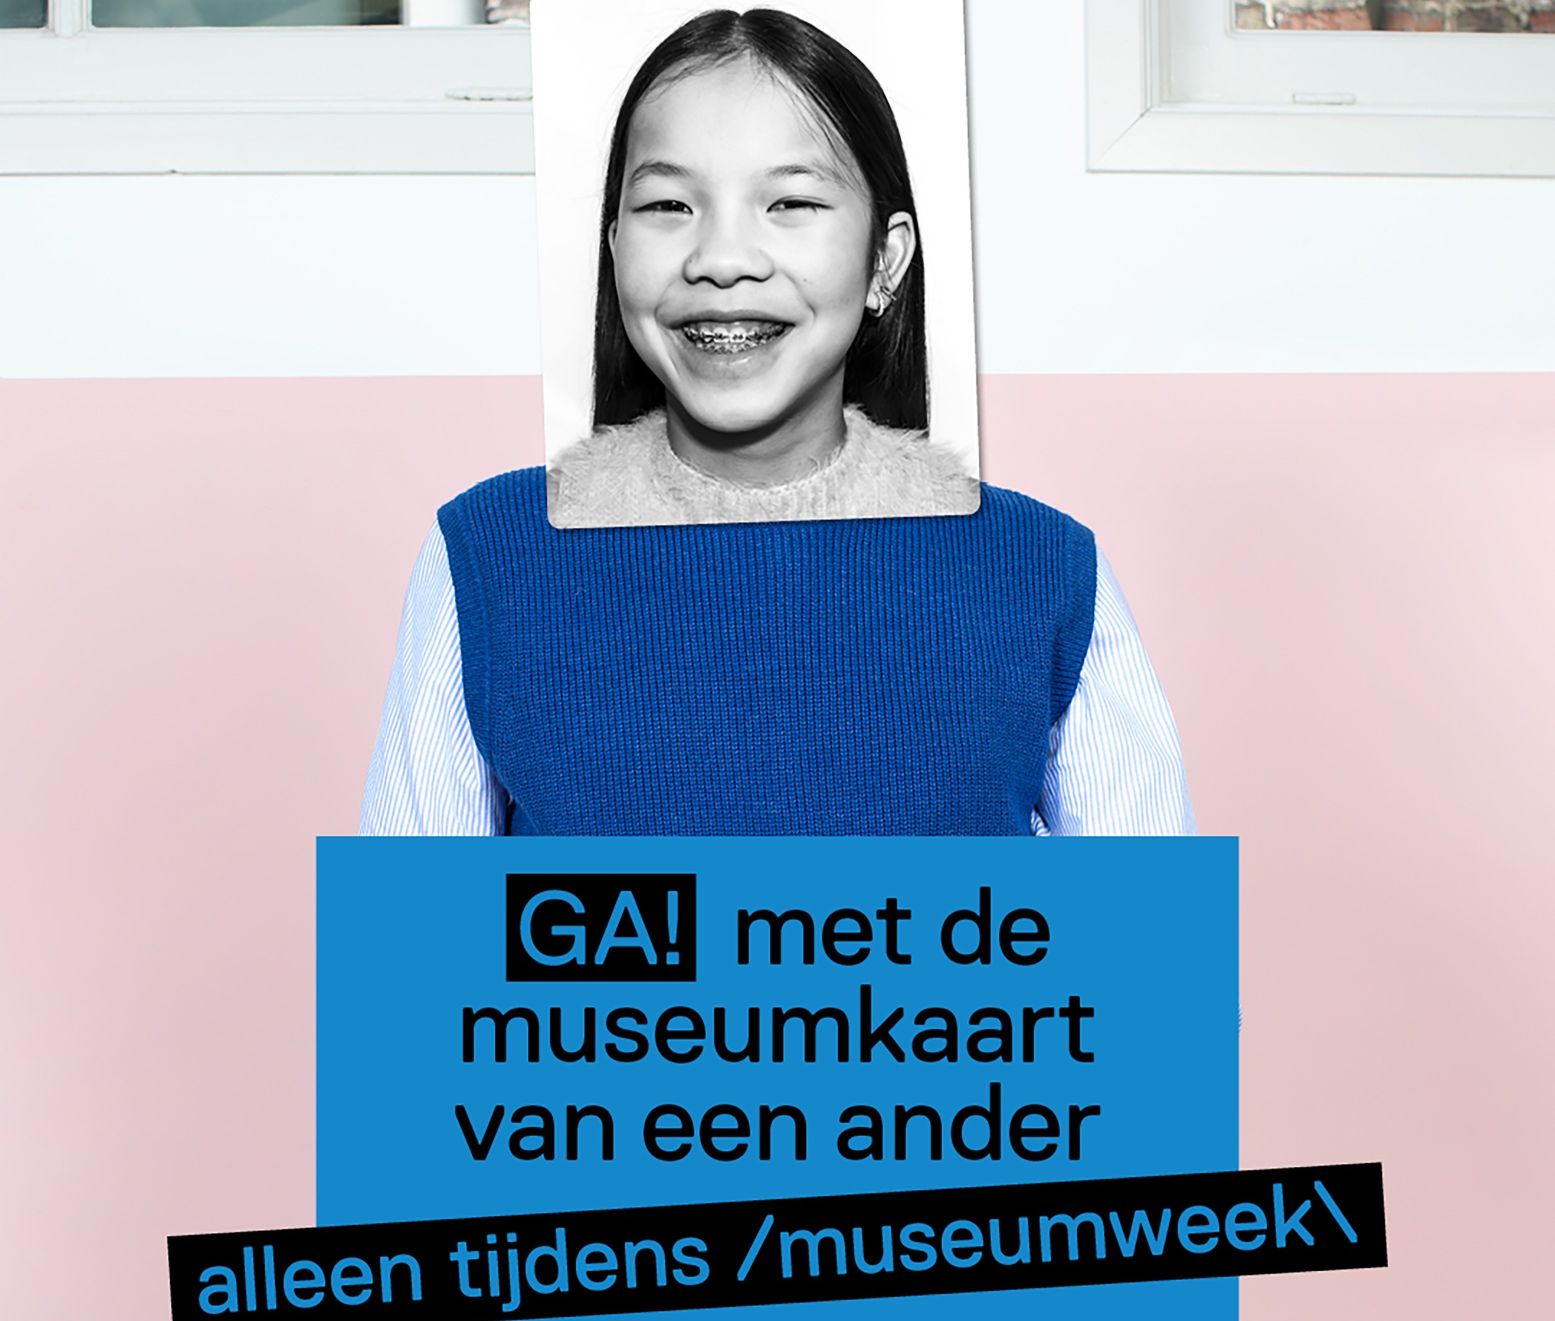 Tijdens de Museumweek kun je gratis naar de musea met een Museumkaart van een ander. Foto: Museumweek